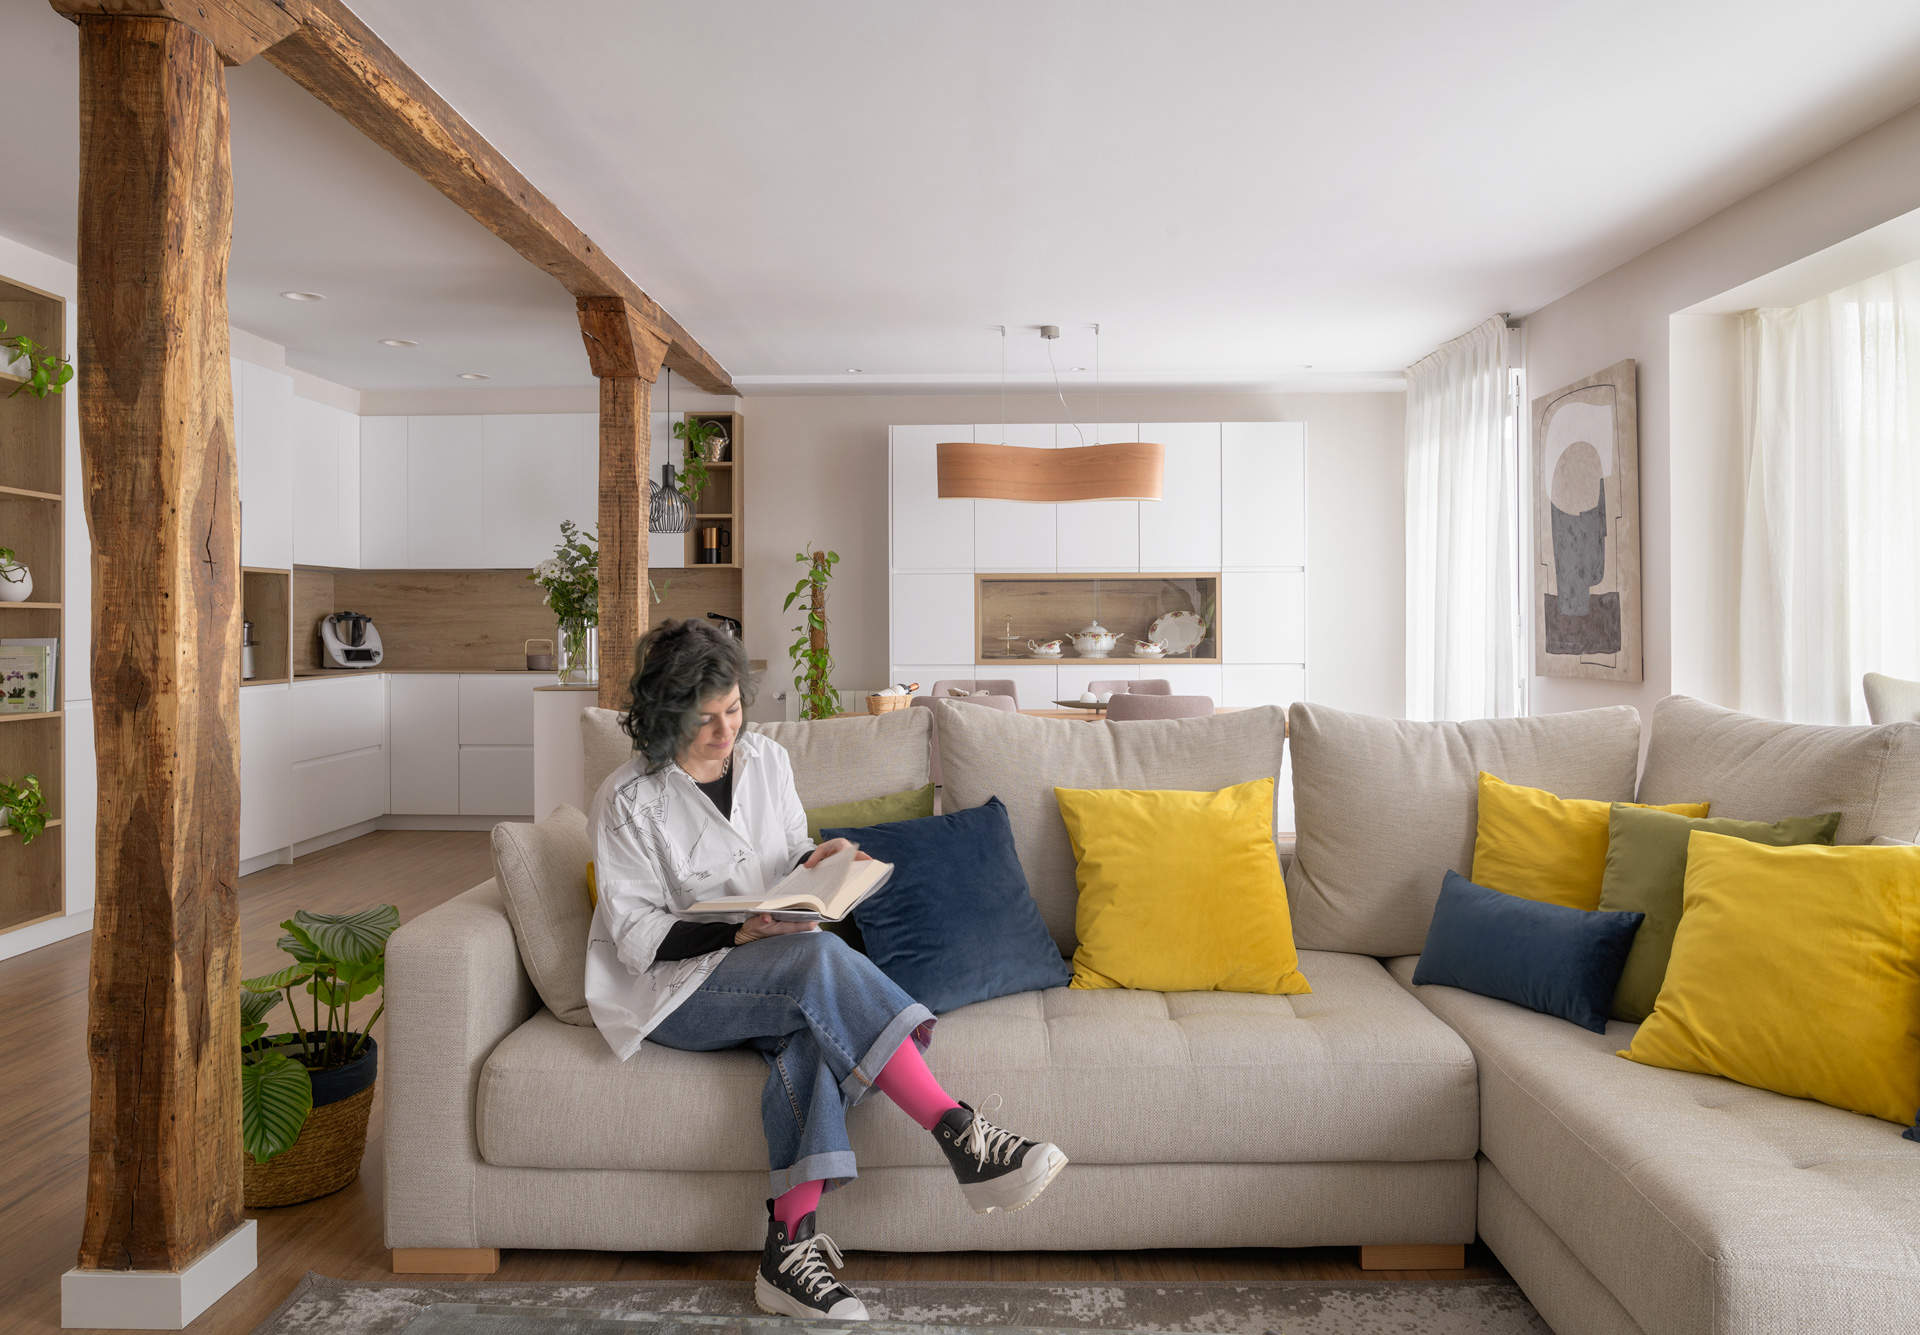 Salón con sofá gris en forma de L, cojines de colores, vigas de madera y cocina al fondo. 